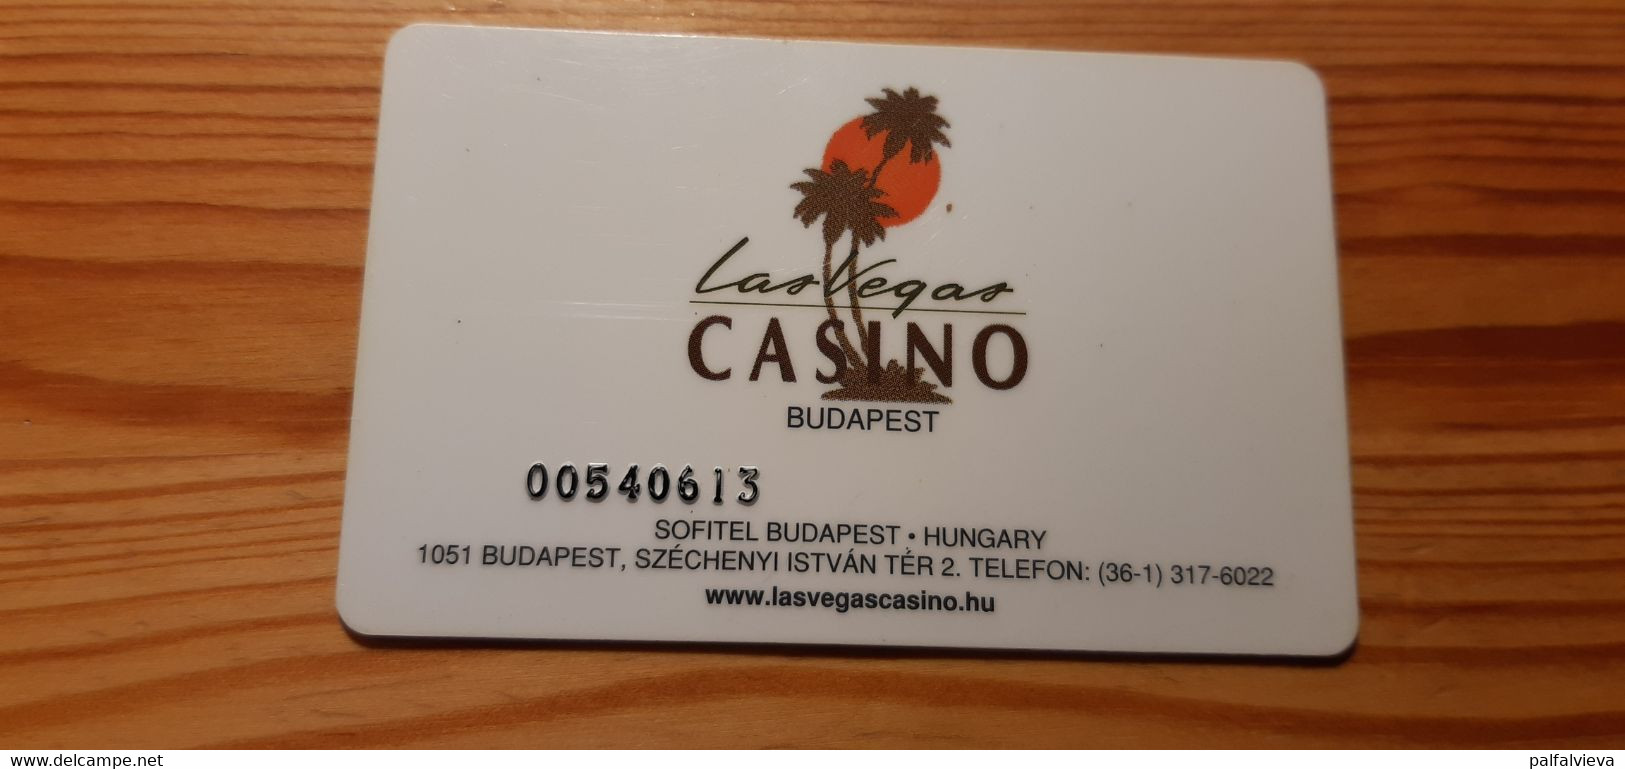 Las Vegas Casino Card Hungary - Casino Cards